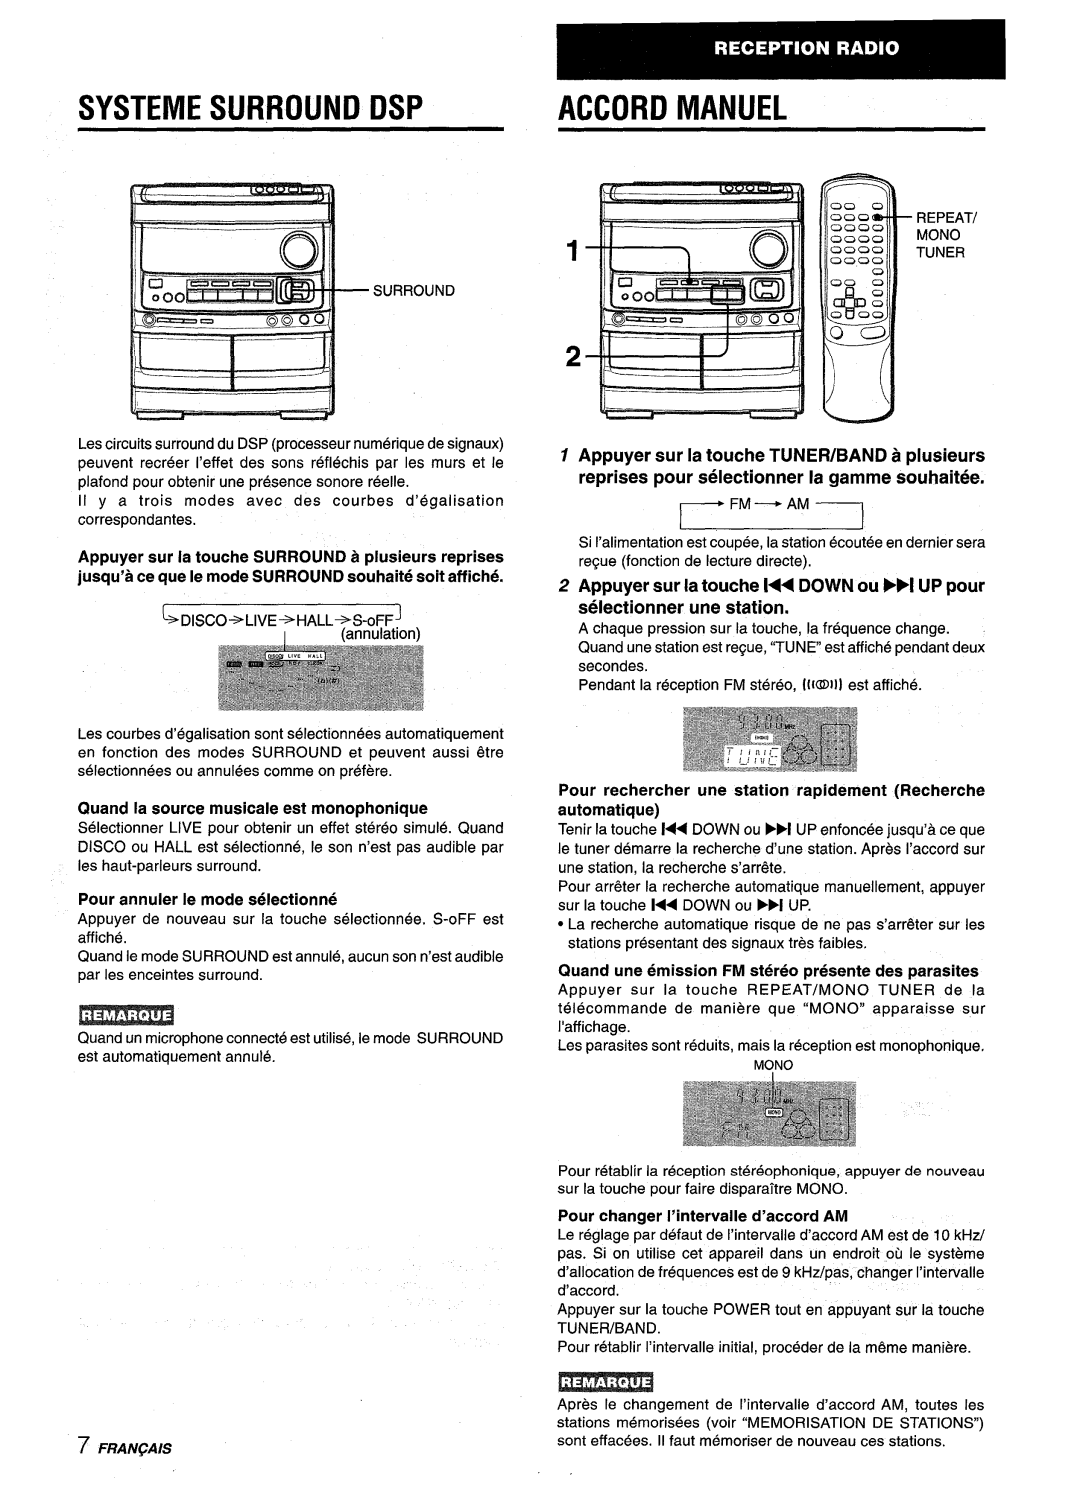 Aiwa NSX-V9000 manual Systeme Surround Dsp, Fm -Am I, Appuyer sur la touche 1 DOWN ou Fl UP pour selectionner une station 